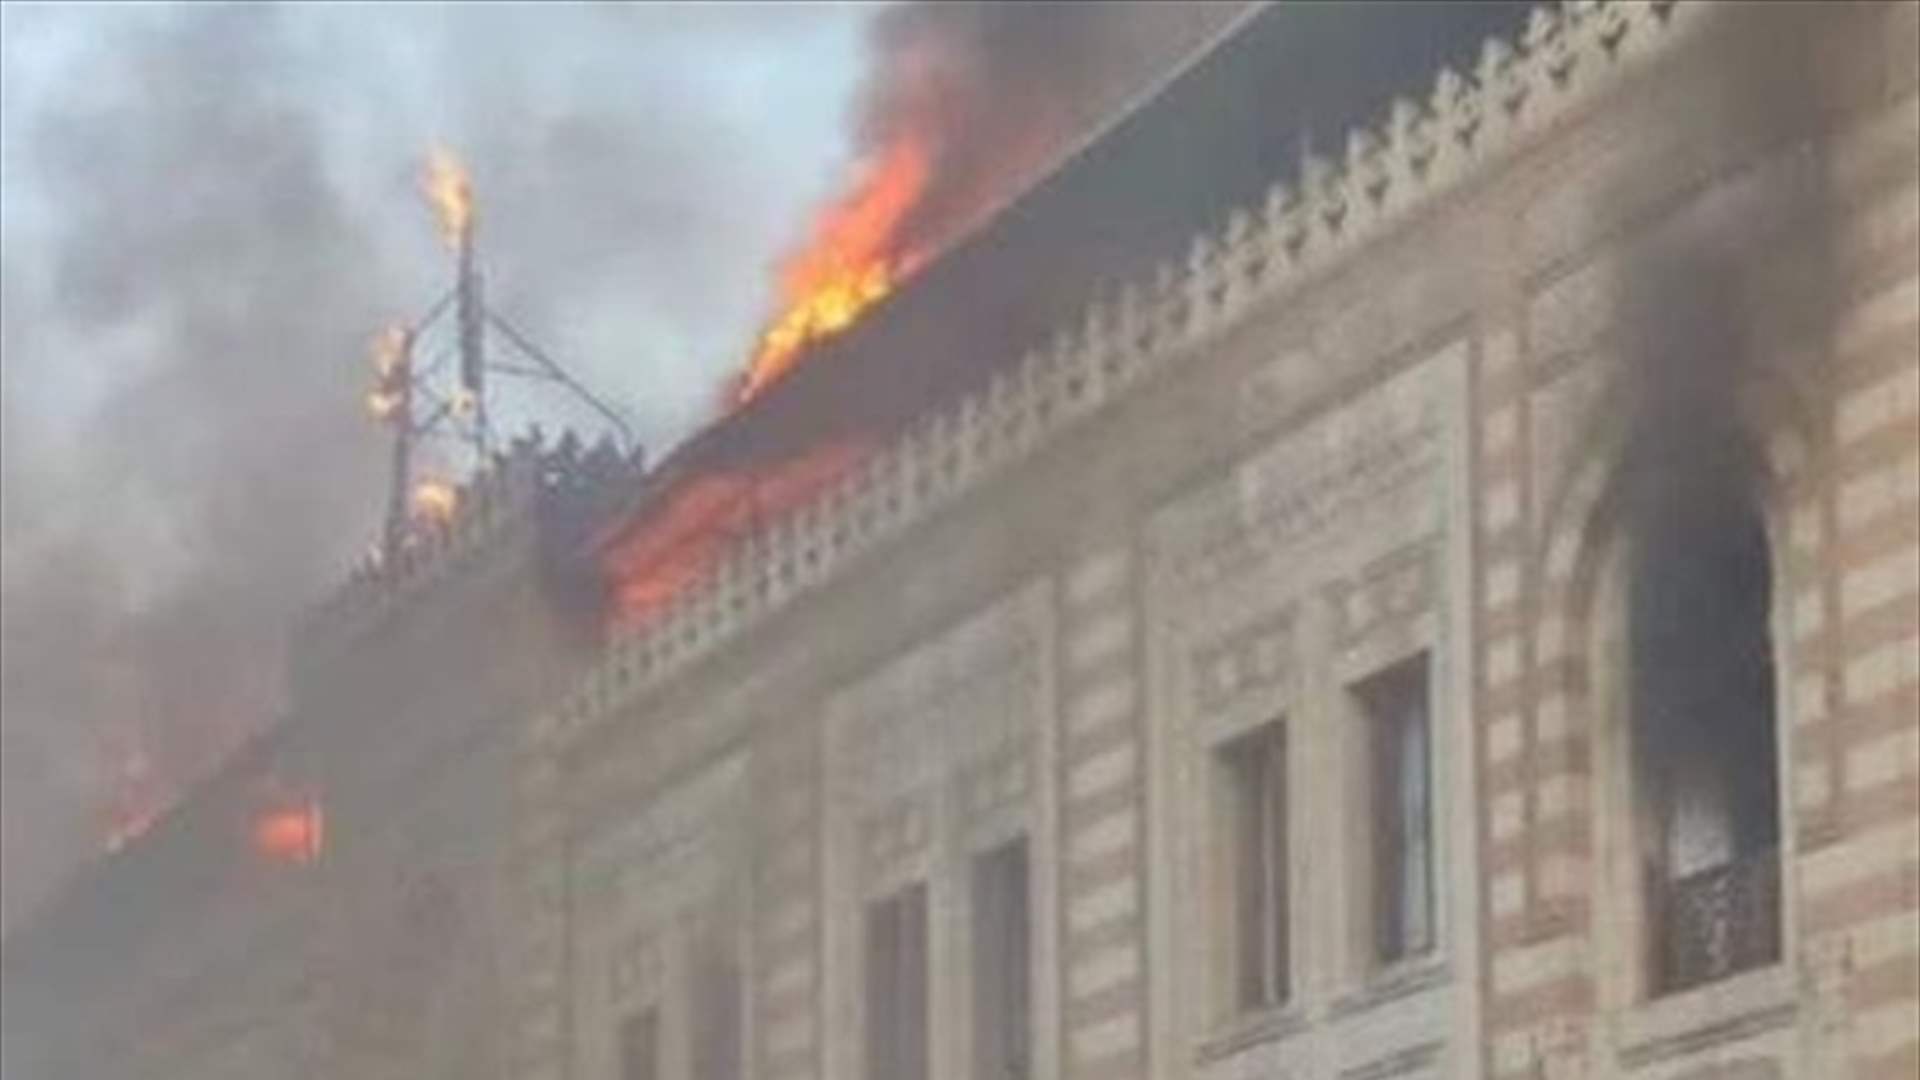 بالصور والفيديو : حريق ضخم في مبنى وزارة الأوقاف المصرية القديم وسط القاهرة